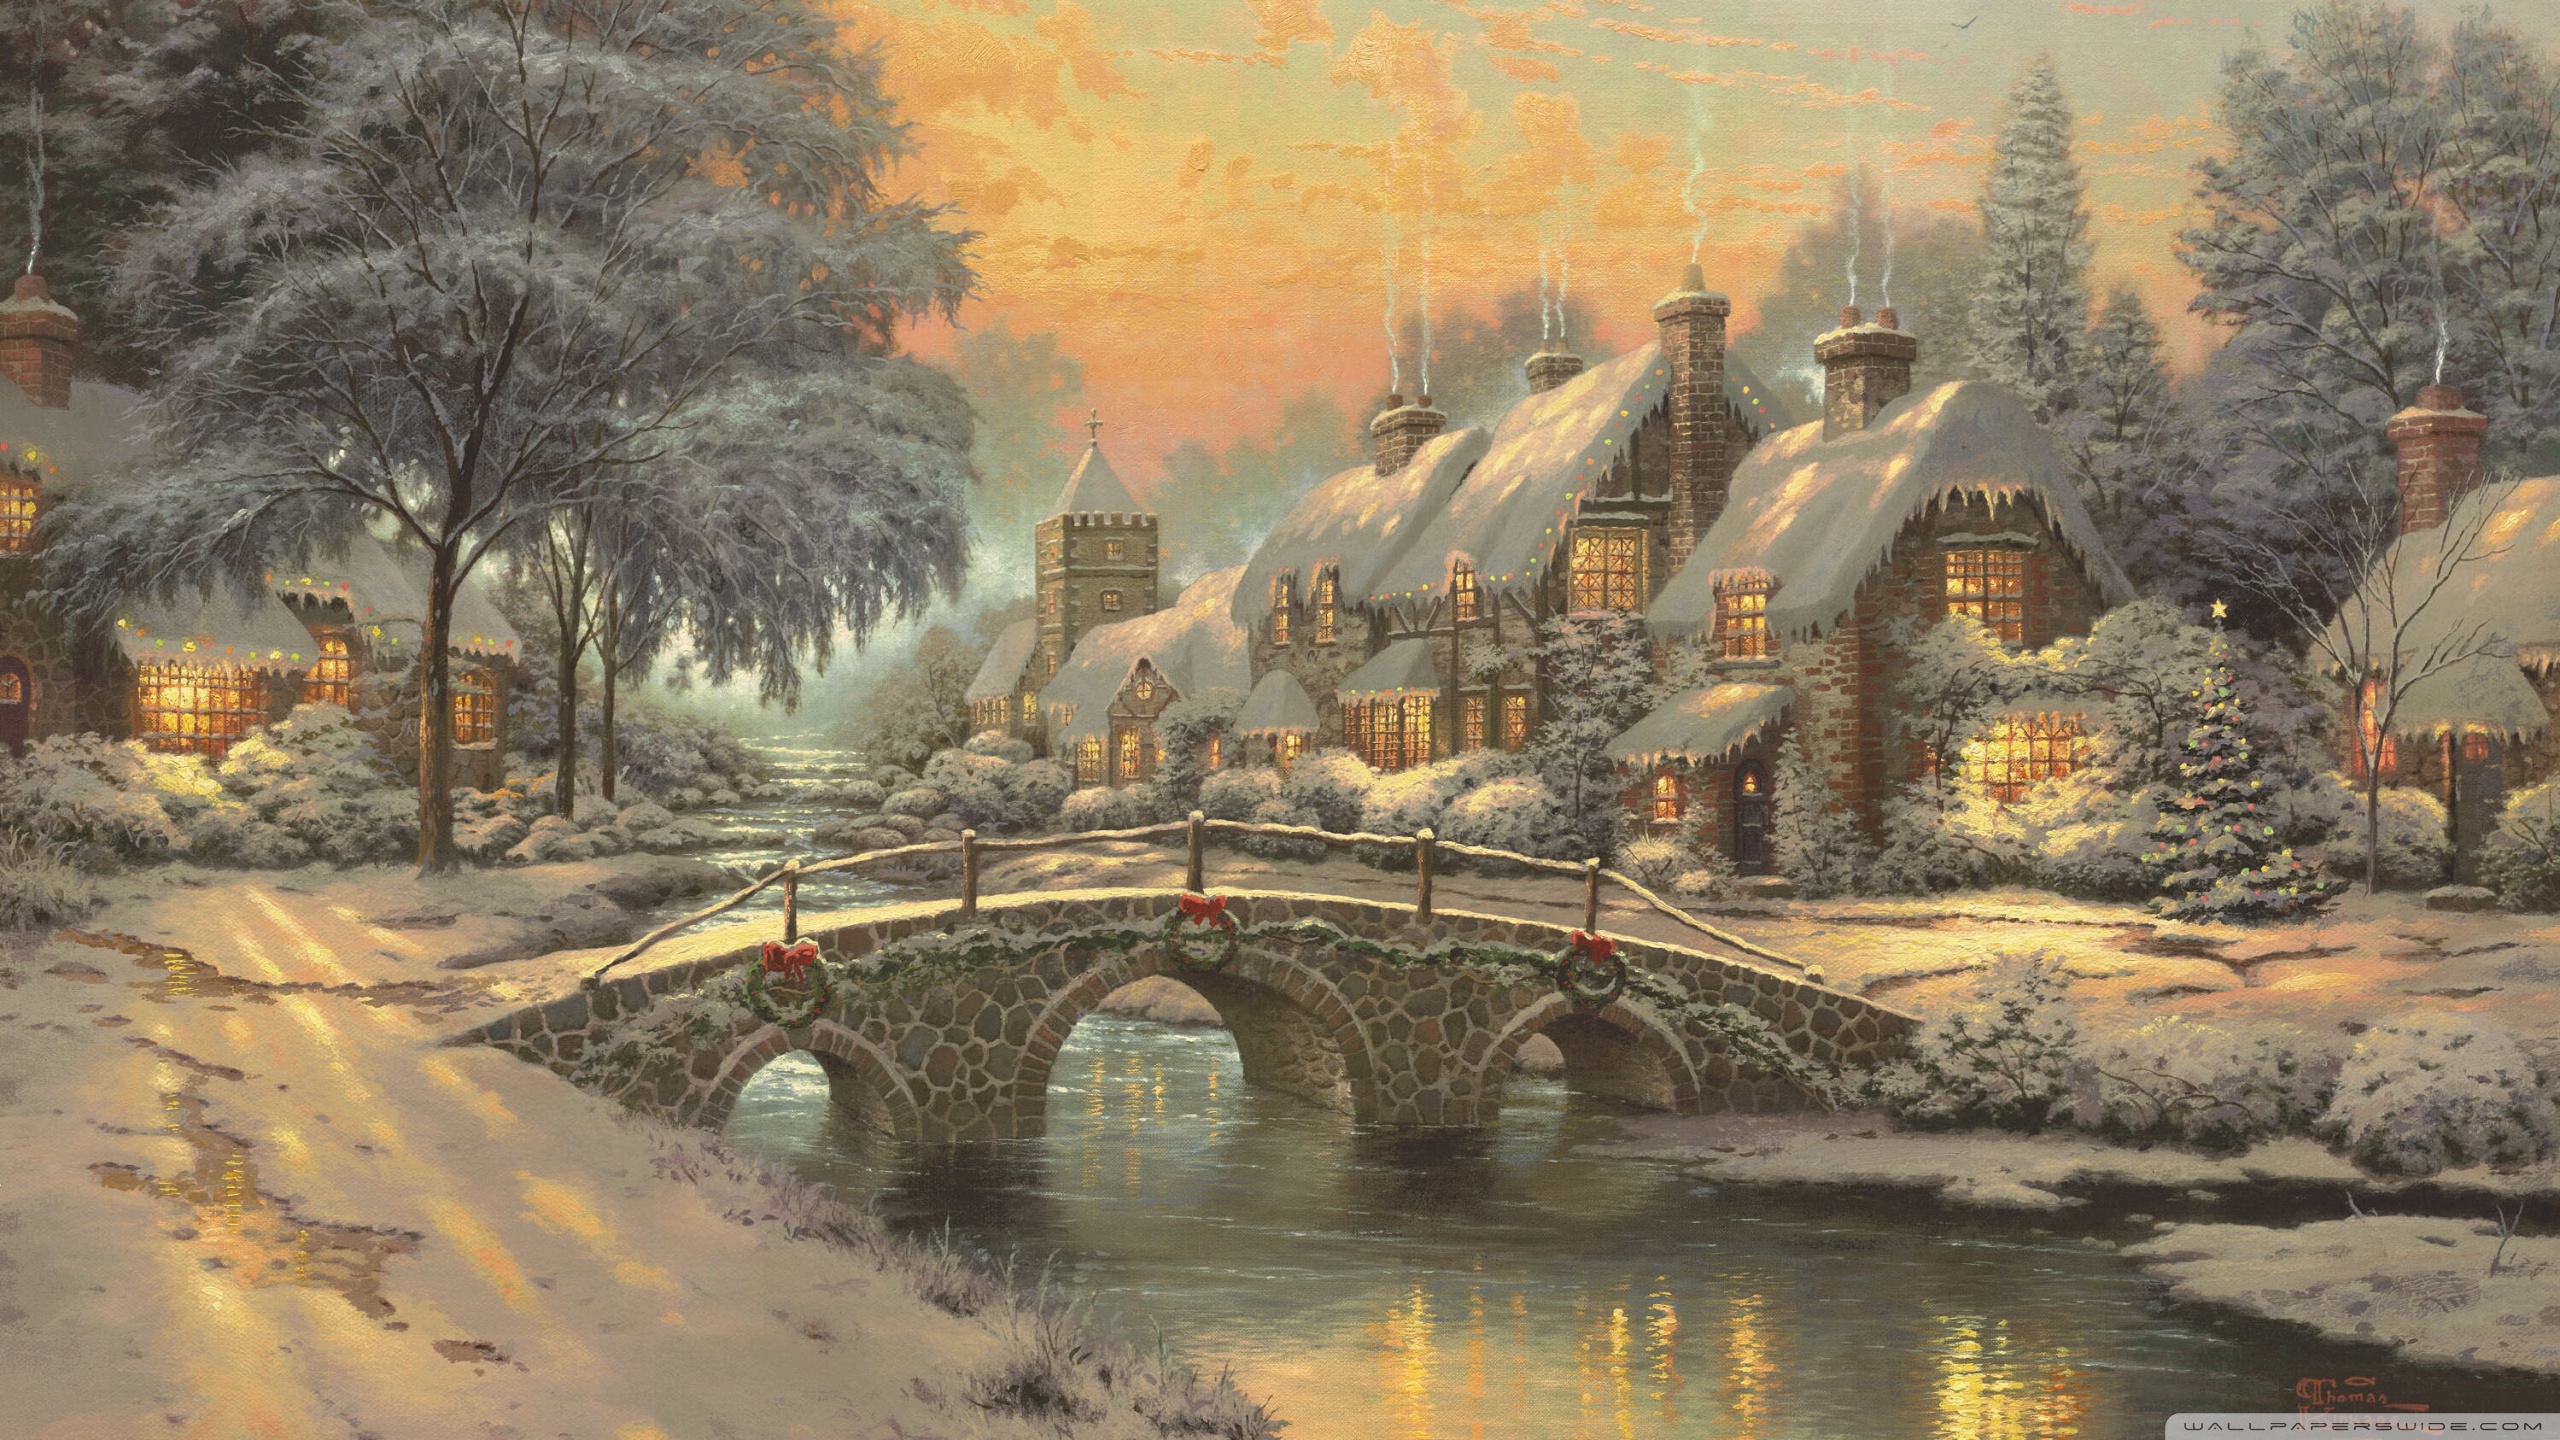 Christmas Painting by Thomas Kinkade